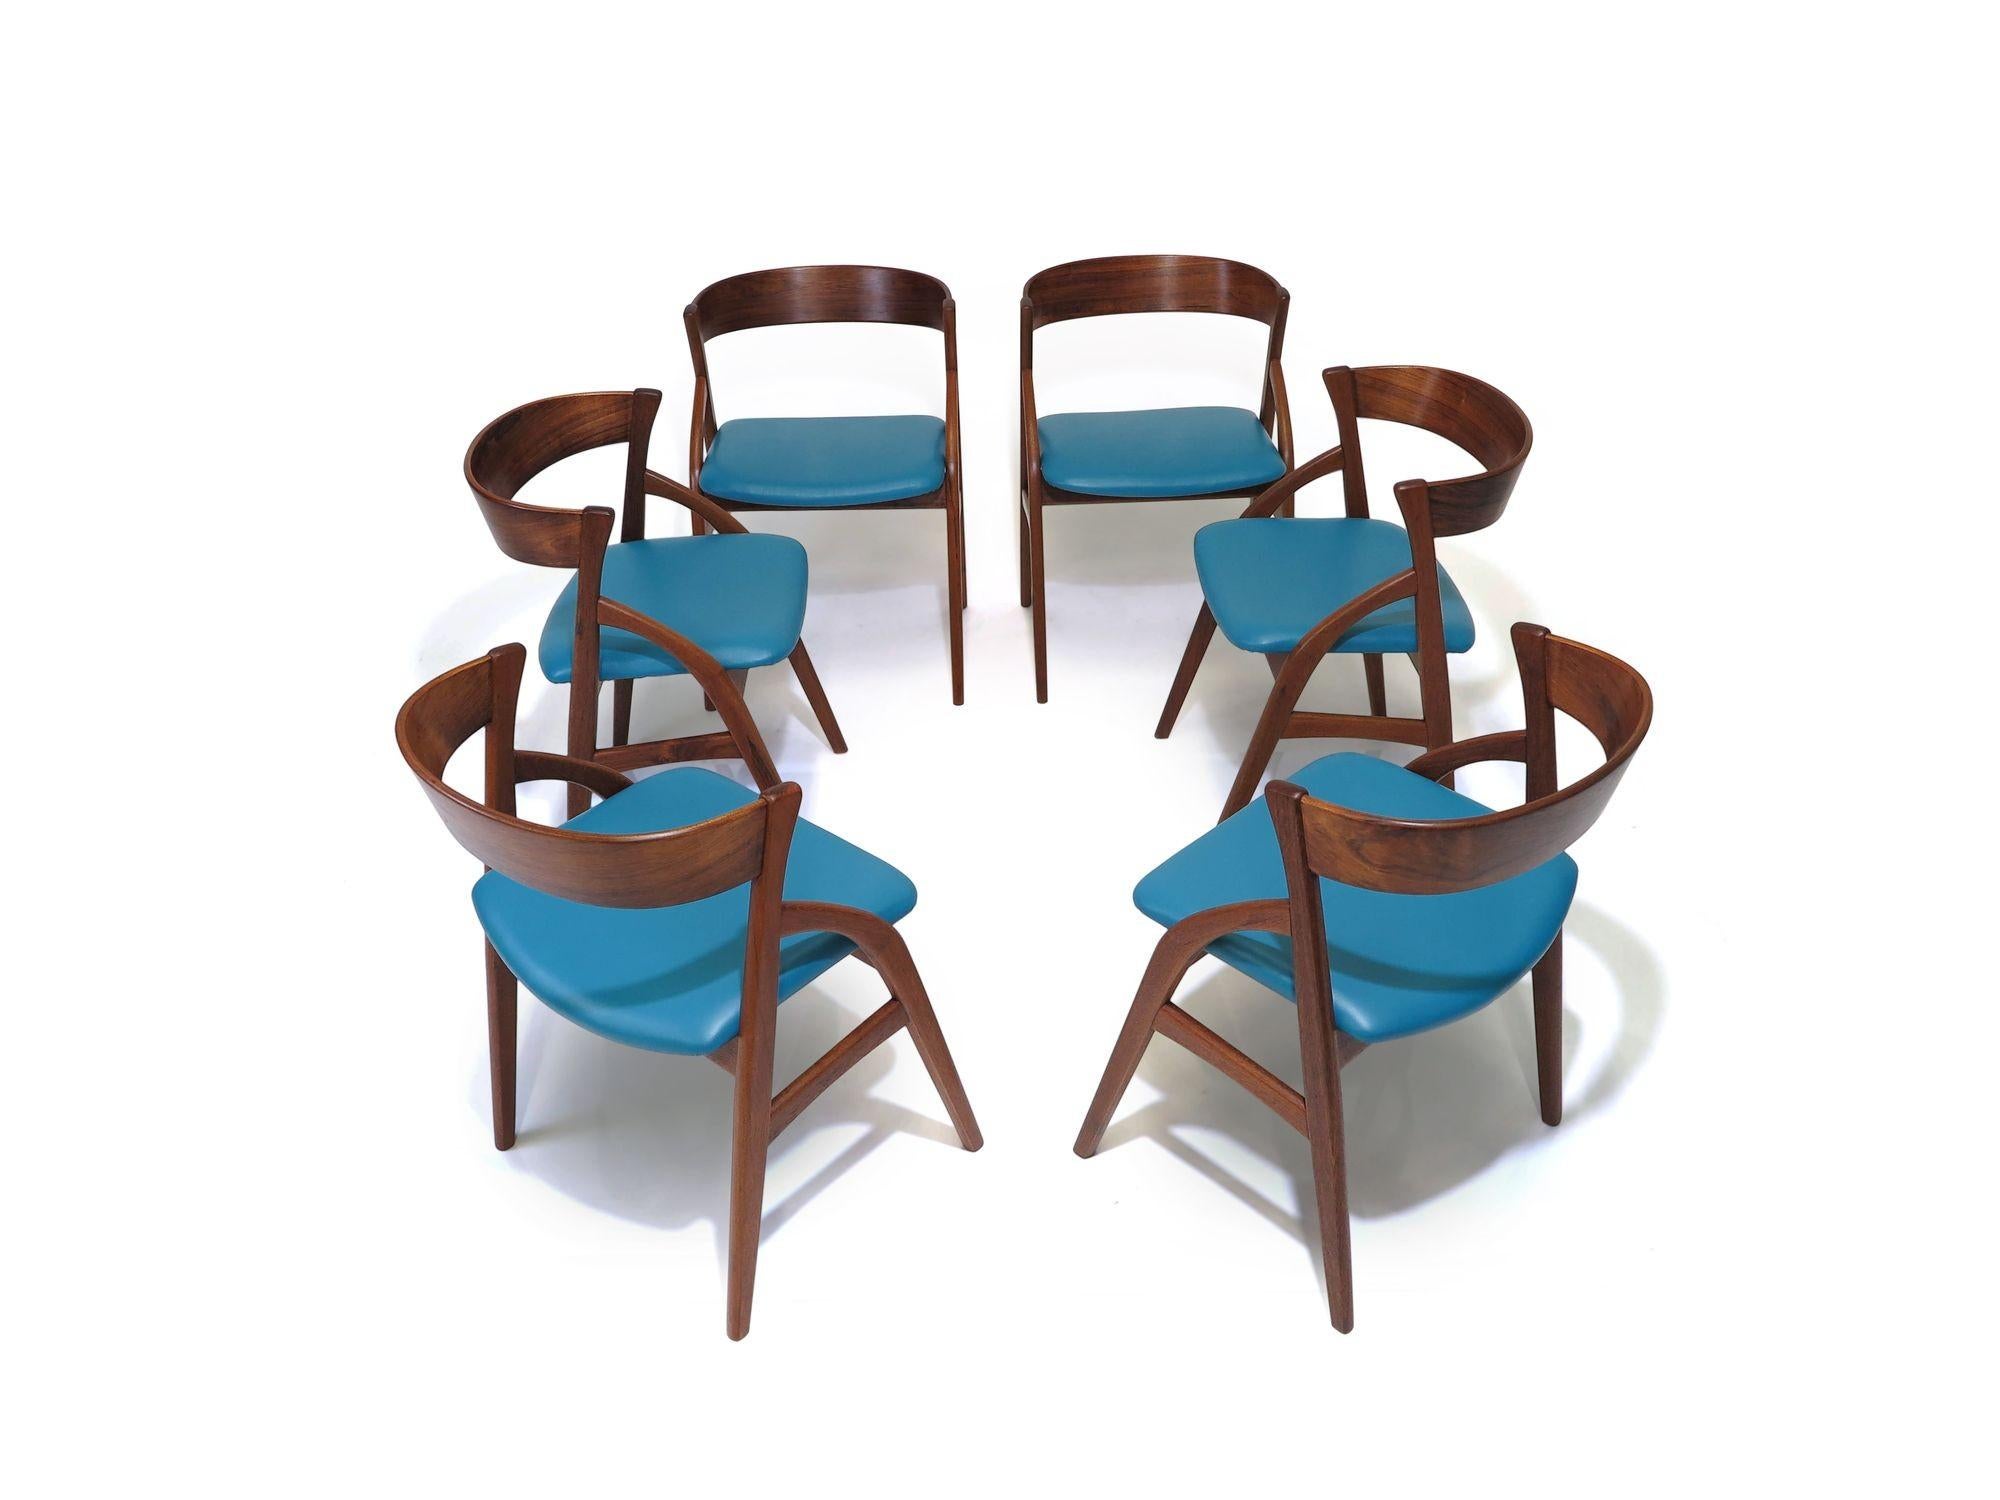 Satz von sechs dänischen Palisander-Esszimmerstühlen aus der Mitte des Jahrhunderts, handgefertigt mit gewölbten Rahmen und dramatisch geschwungener Rückenlehne. Perfekt restaurierte Rahmen und neu gepolstert mit blauem Leder. Die Stühle sind sehr